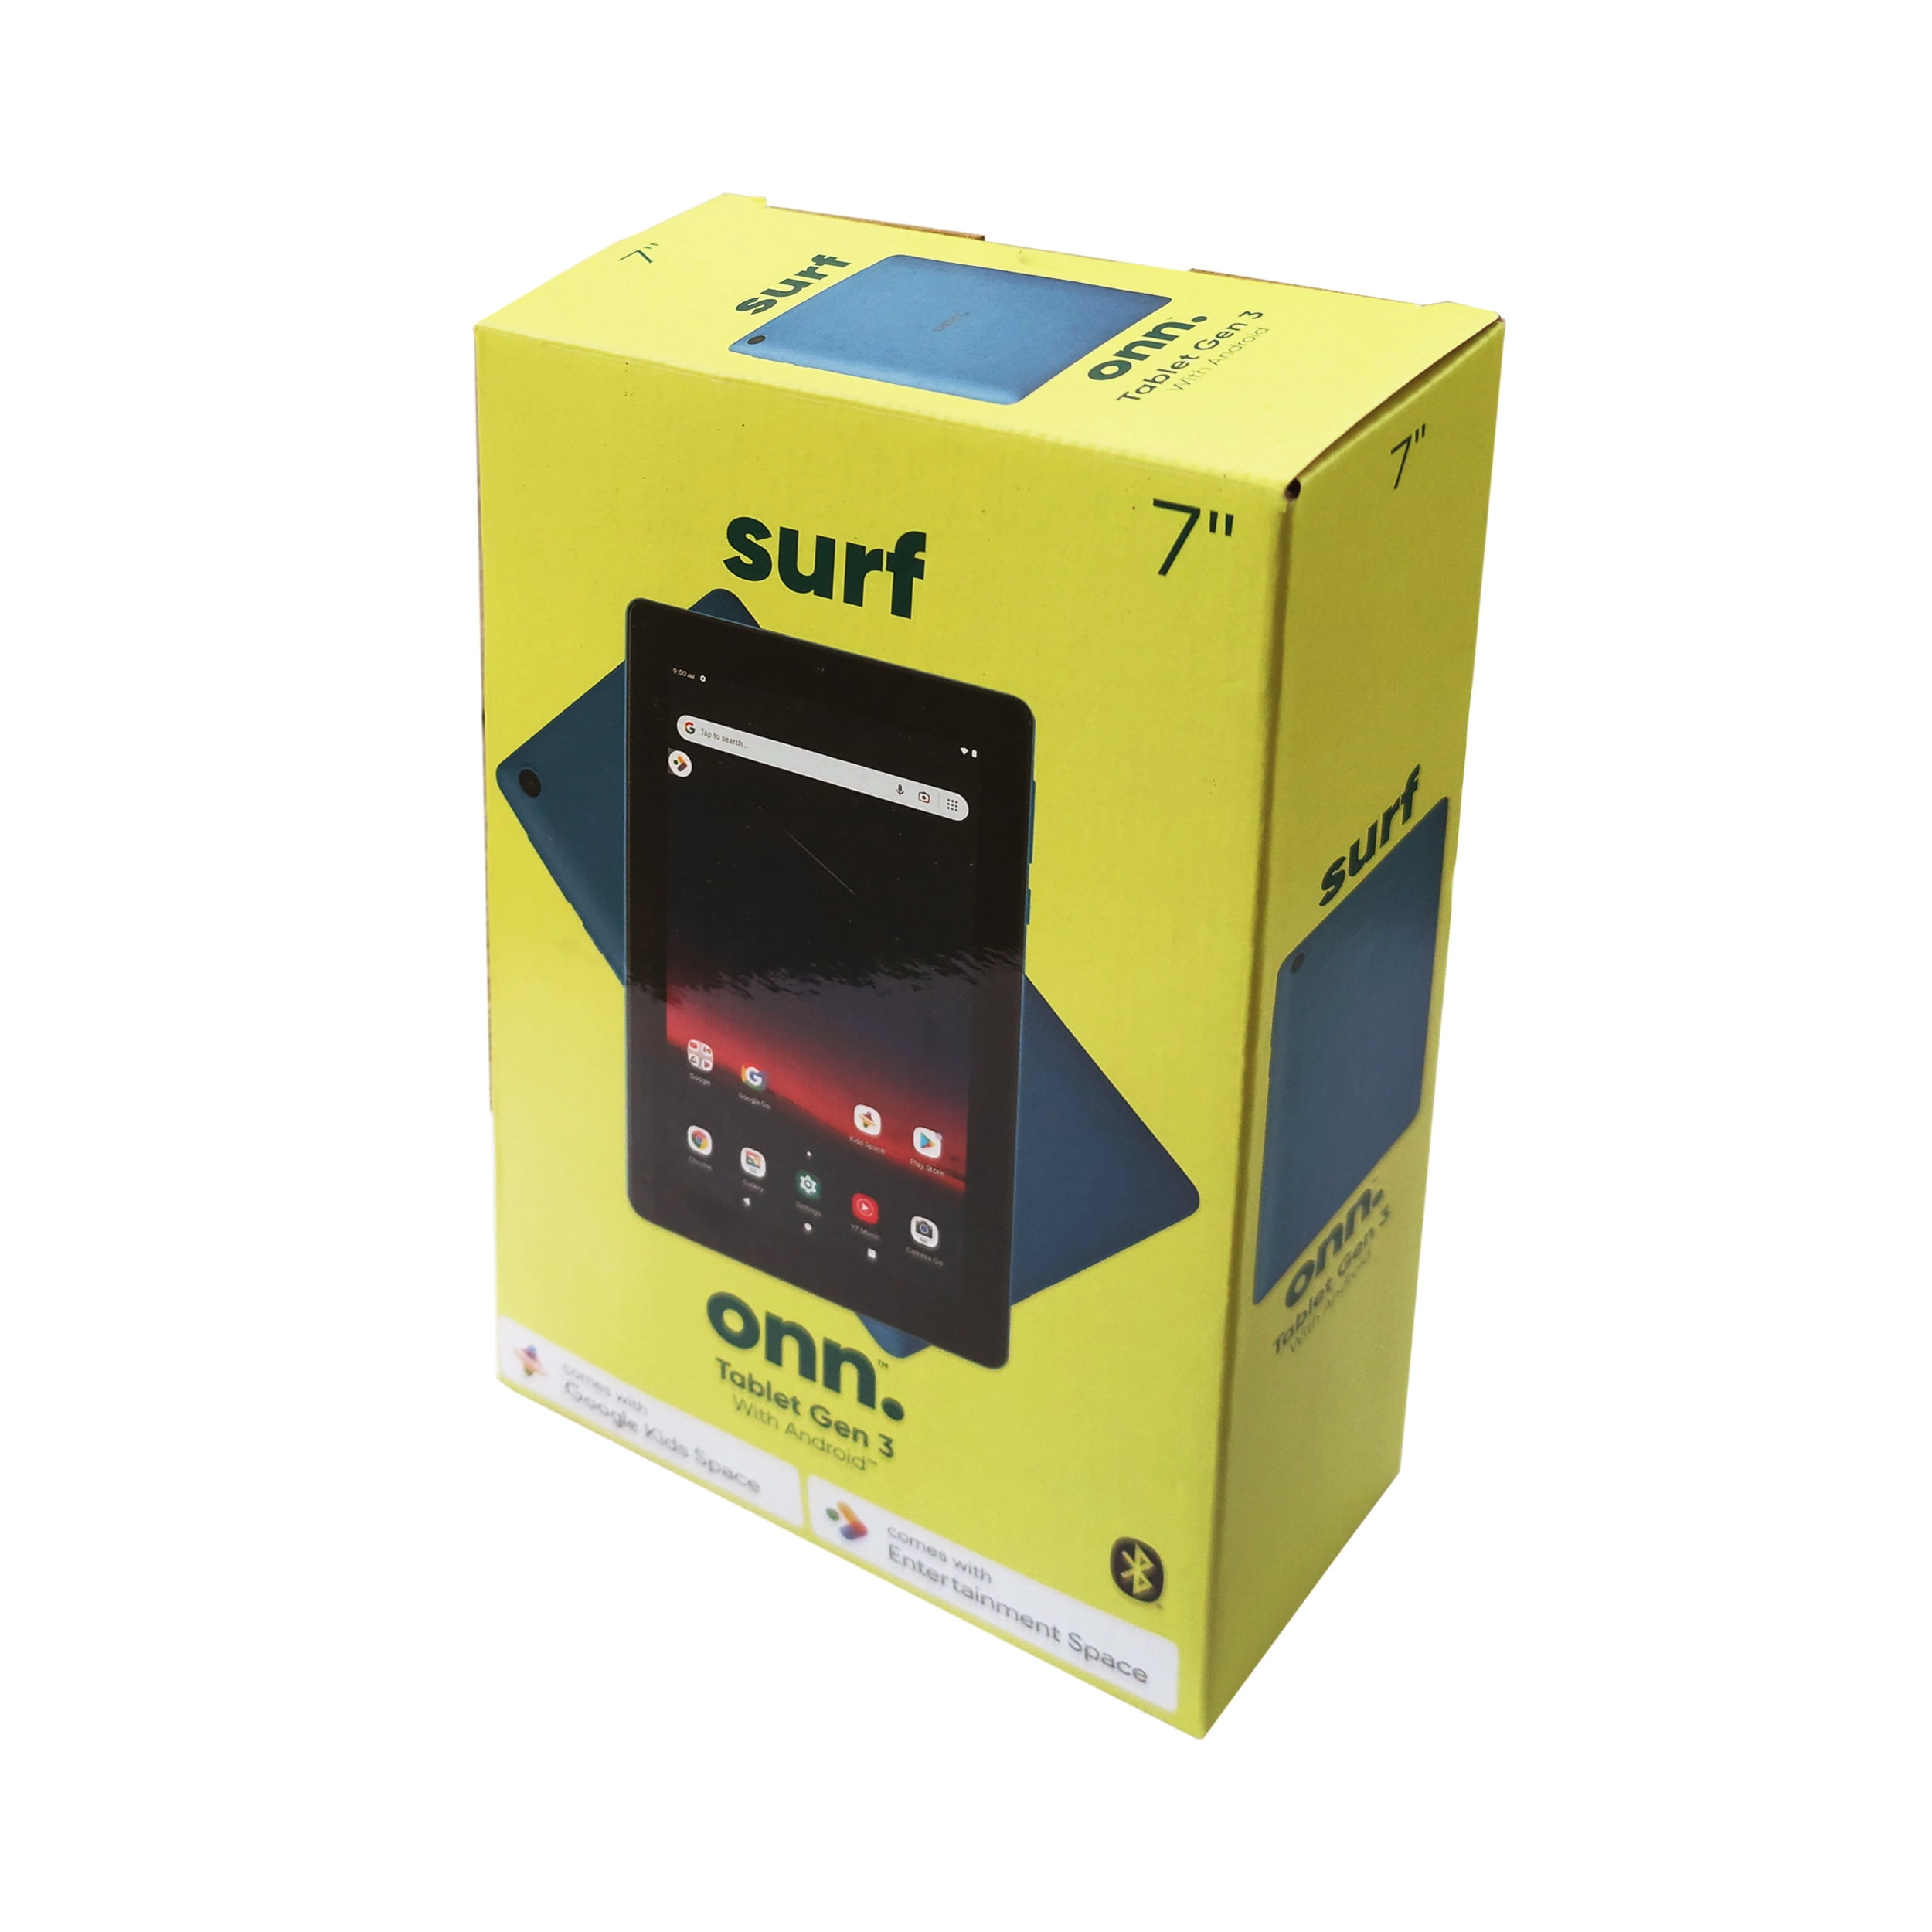 Tablet Krono Net R7 32gb Ram 2gb Android 13 3g 7 Pulgadas